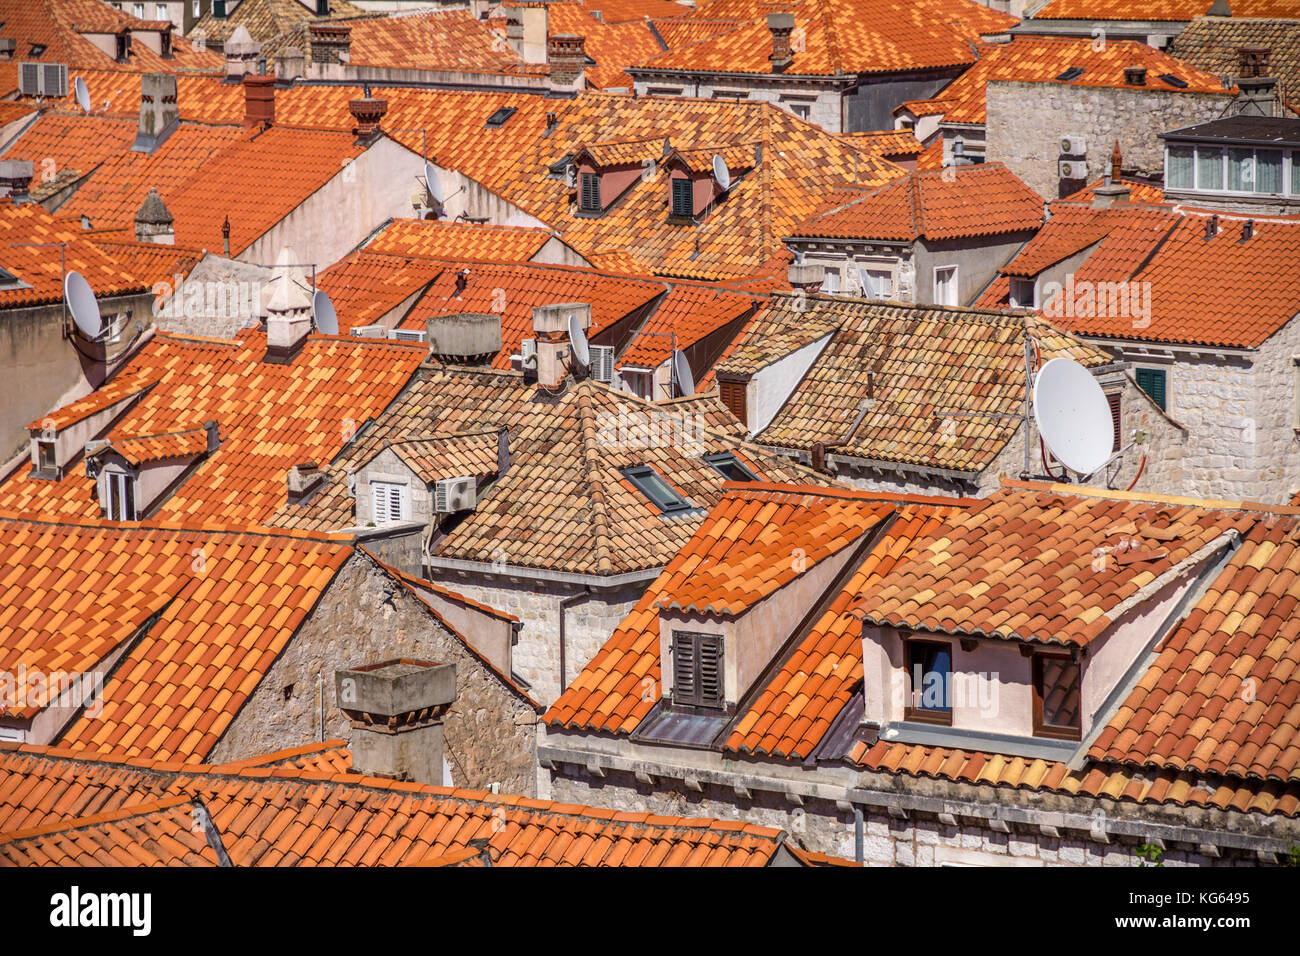 Acercar la vista en mosaico de tejados de terracota brillante, el casco antiguo de Dubrovnik. Ventanas con persianas y antenas parabólicas traer ver actualizado a Croacia. Foto de stock